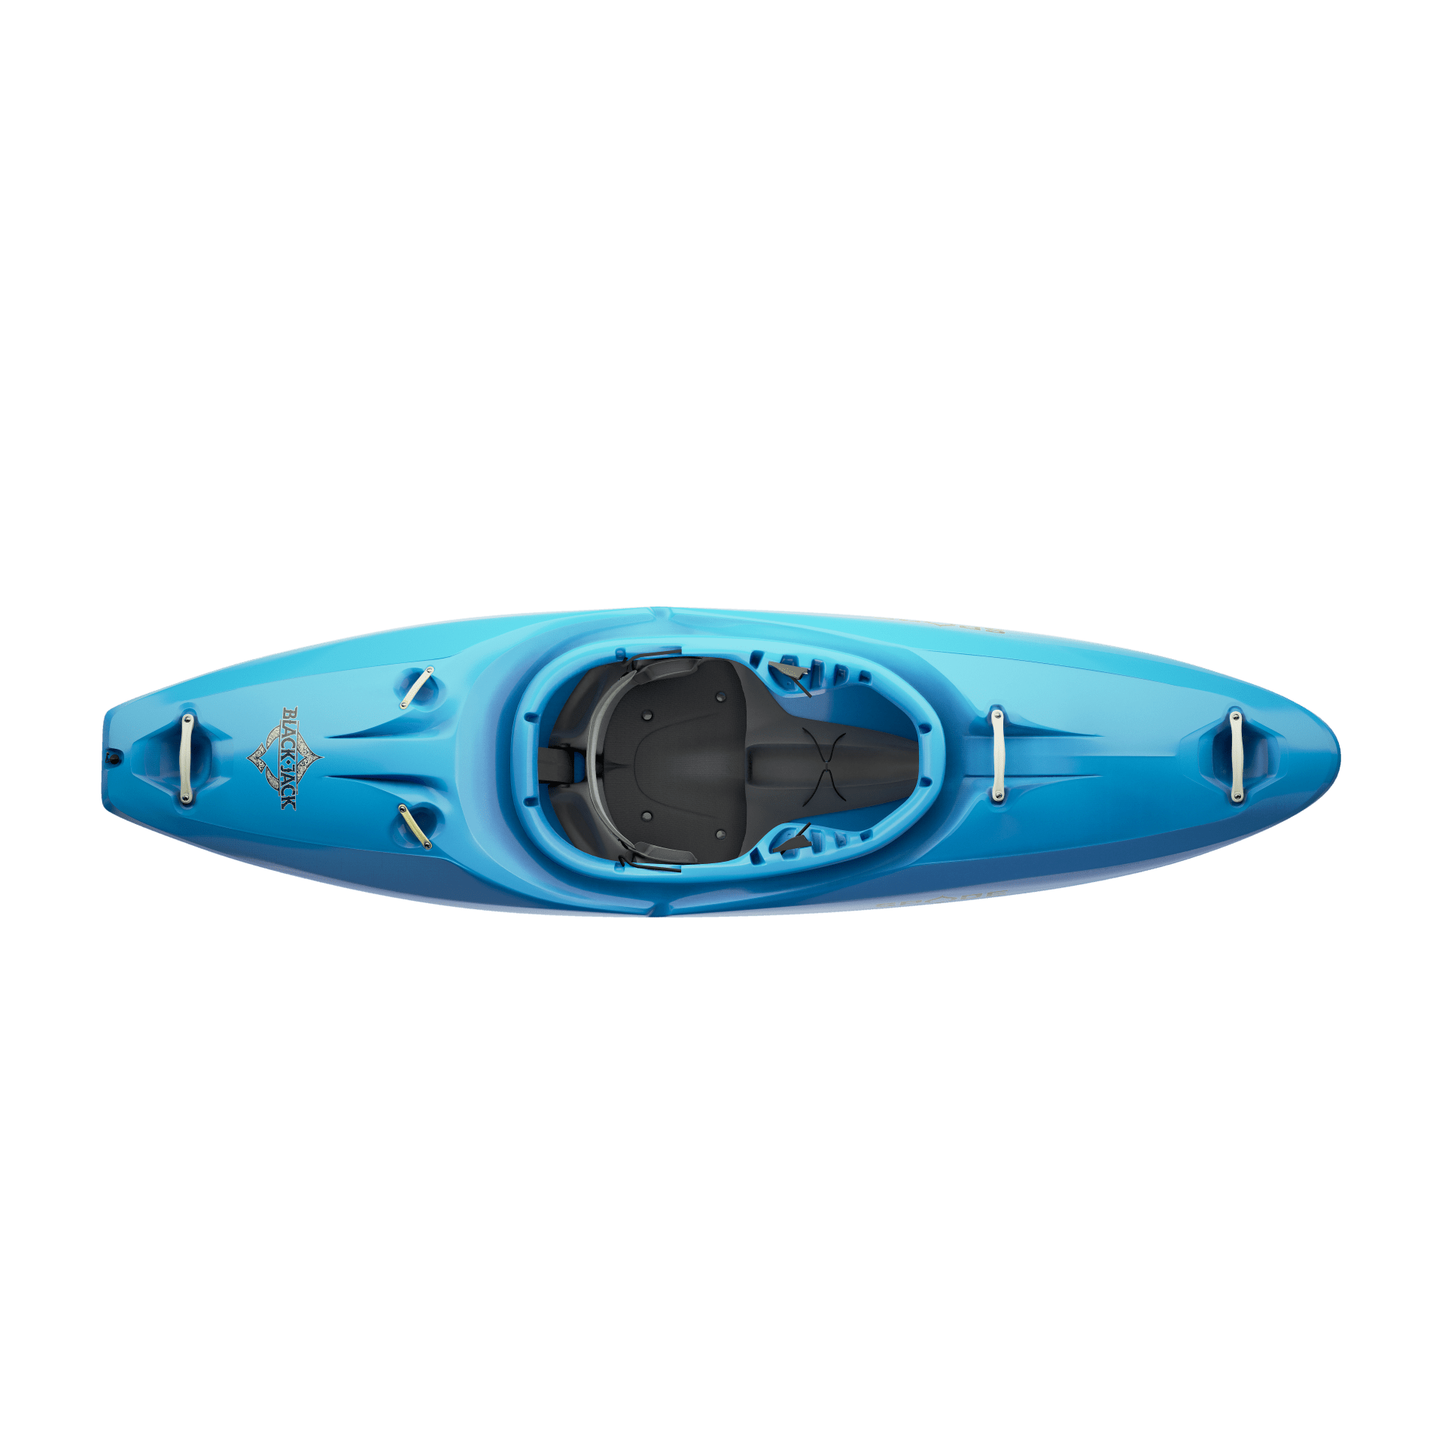 Black Jack WhiteWater Kayak - Spade Kayaks